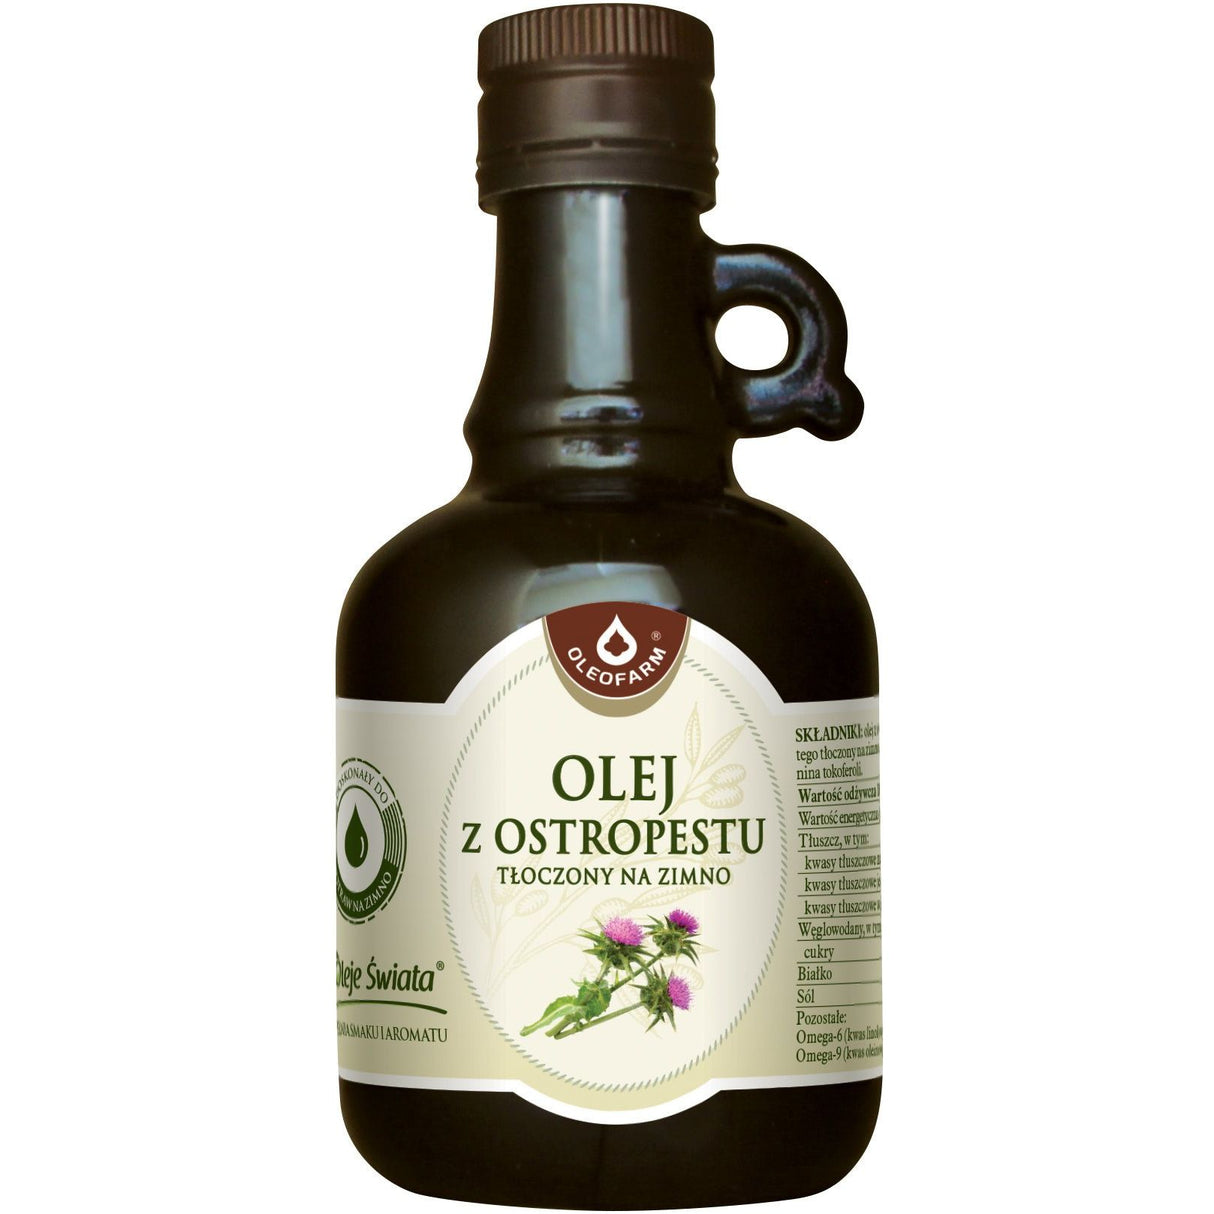 Oleofarm Olej z ostropestu tłoczony na zimno 250 ml - Sklep Witaminki.pl